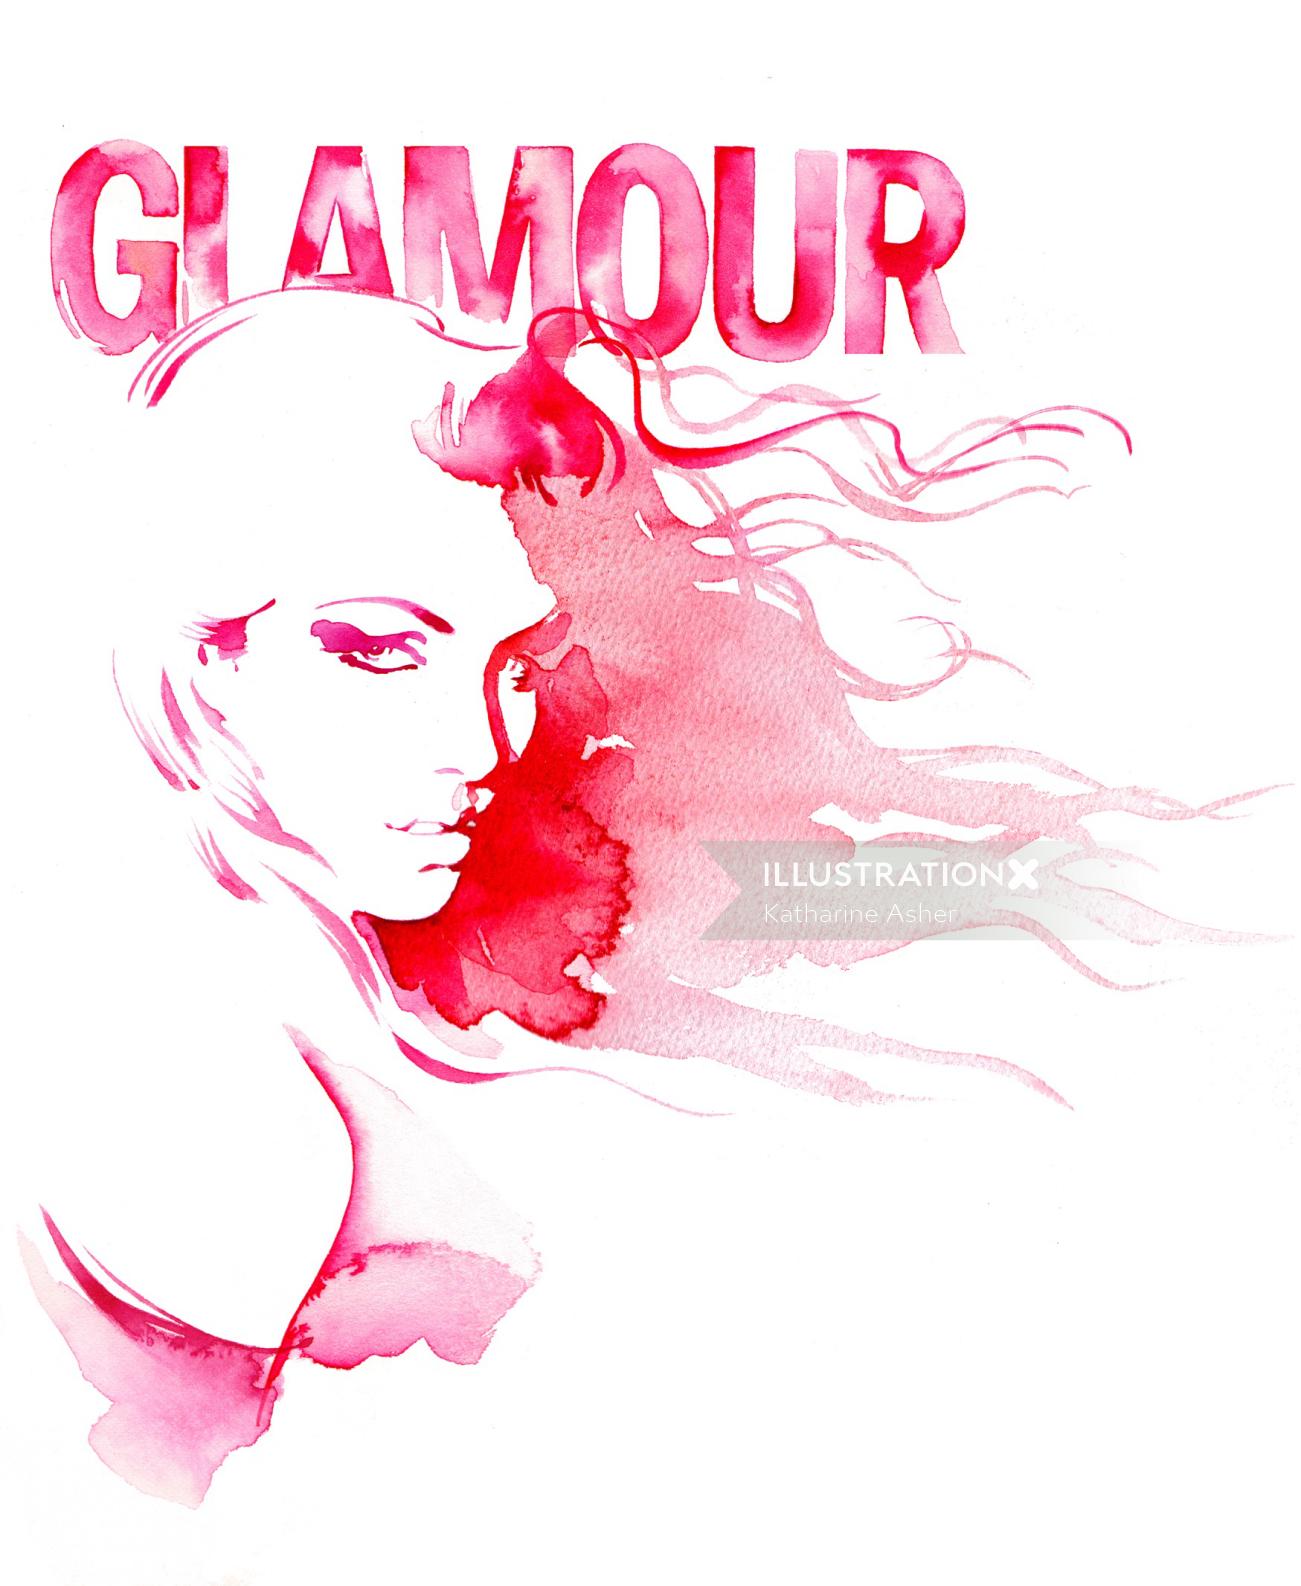 Une illustration pour le magazine Glamour par Katharine Asher